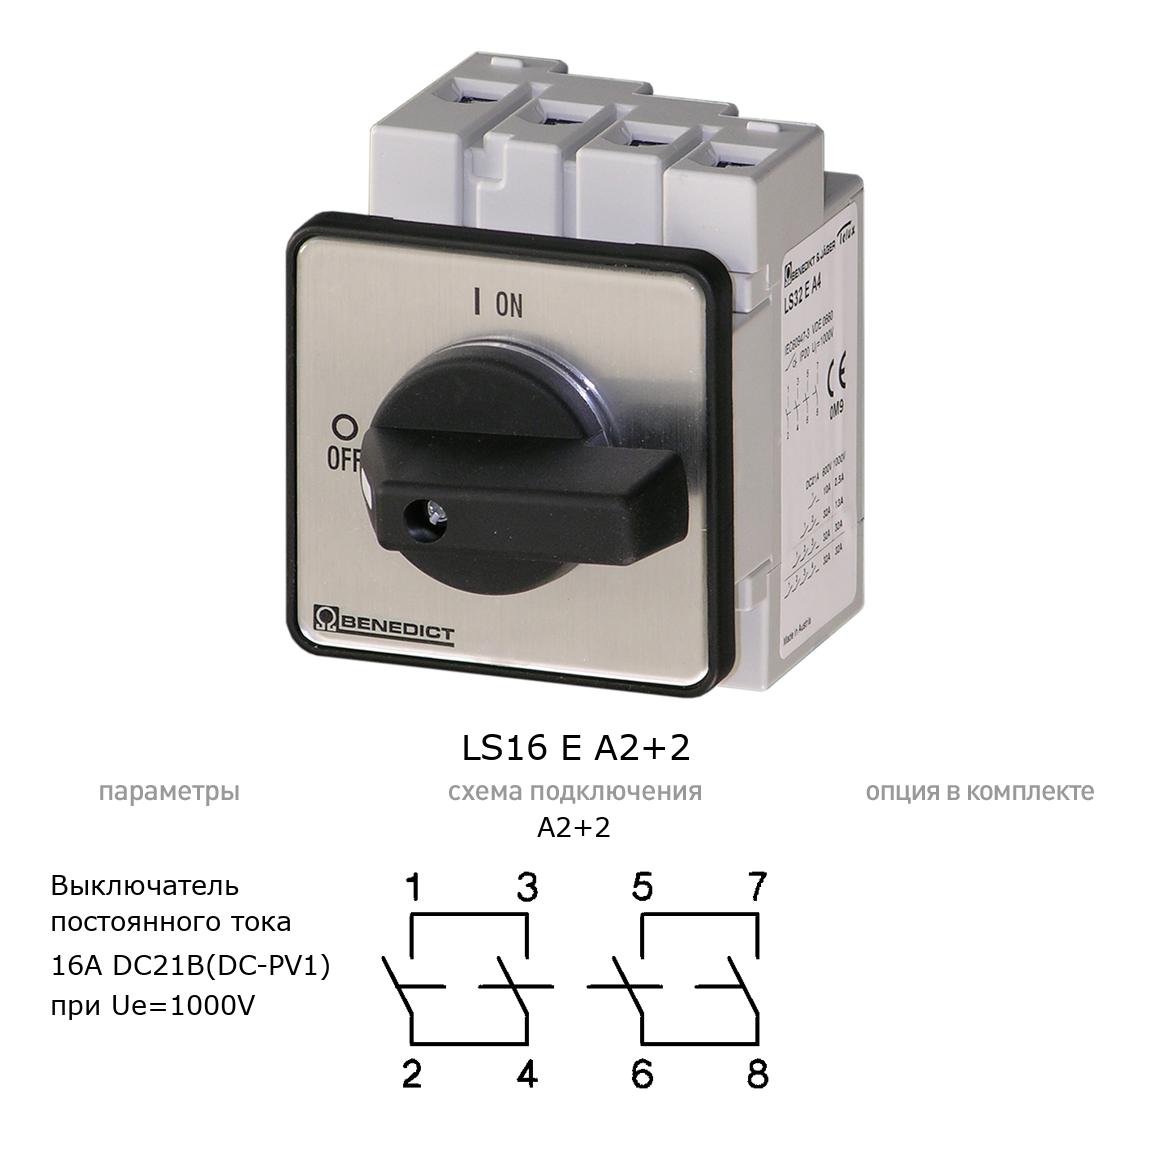 Кулачковый переключатель для постоянного тока (DC) LS16 E A2+2 BENEDICT